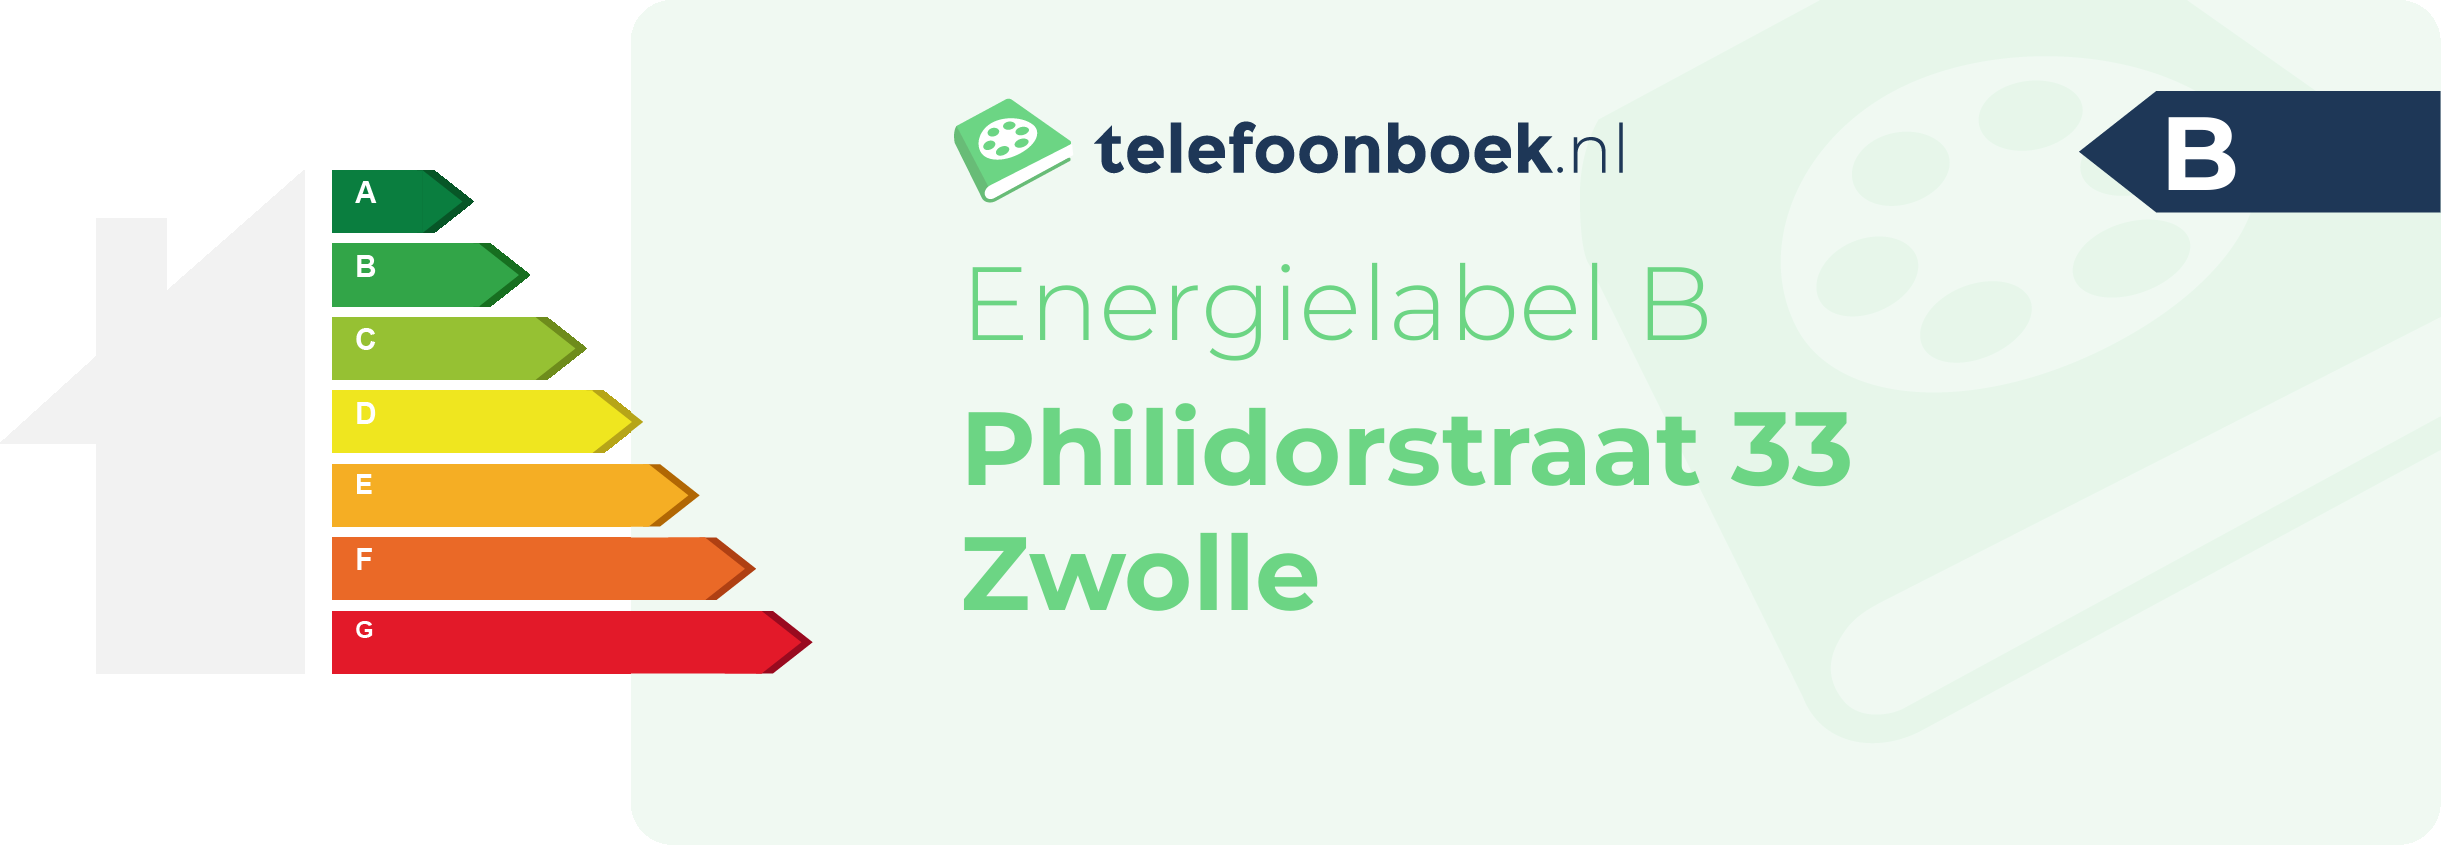 Energielabel Philidorstraat 33 Zwolle